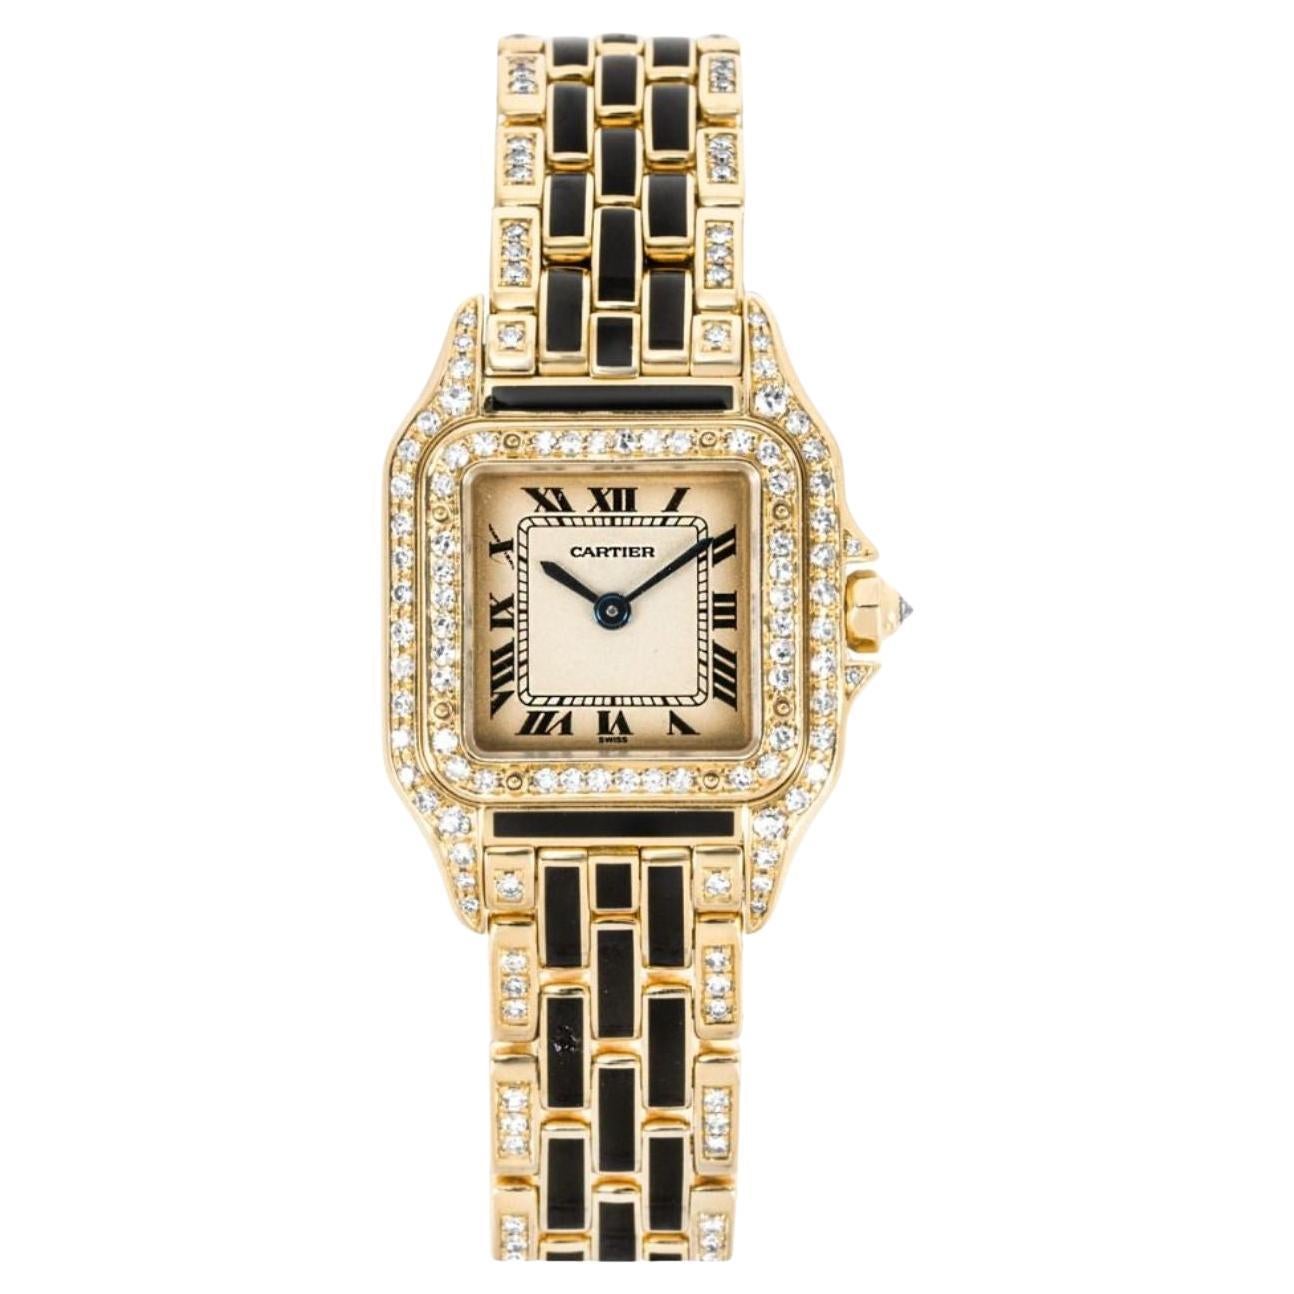 Cartier Panthere Gelbgold-Uhr mit Emaille und Diamantenbesatz